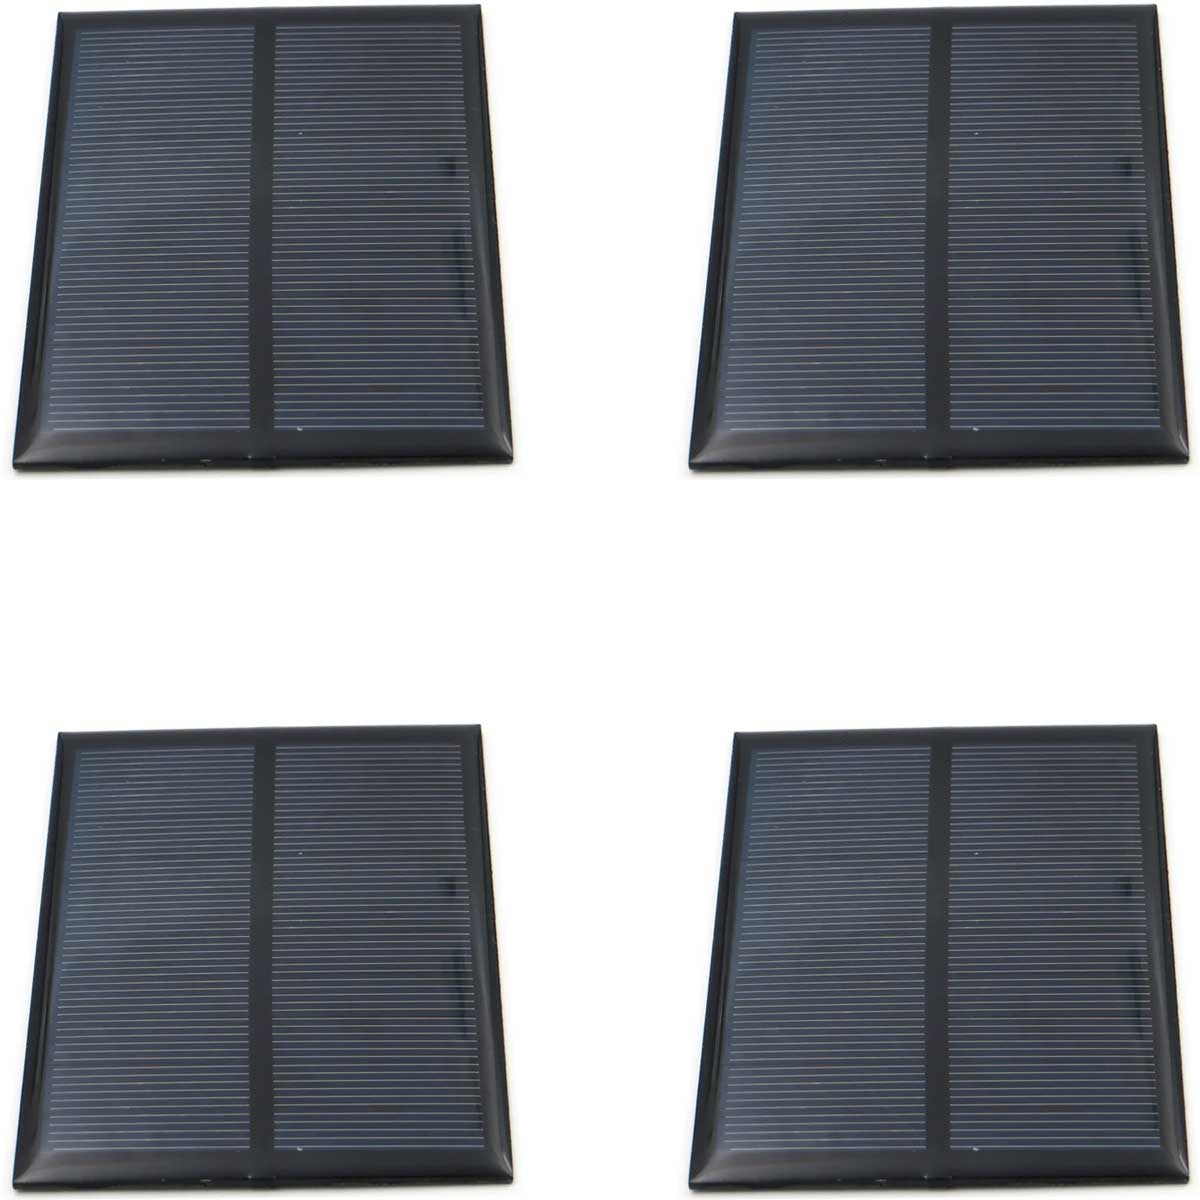 4x Mini Painel / Placa / Célula de Energia Solar Fotovoltaica 5v 200mA 1w